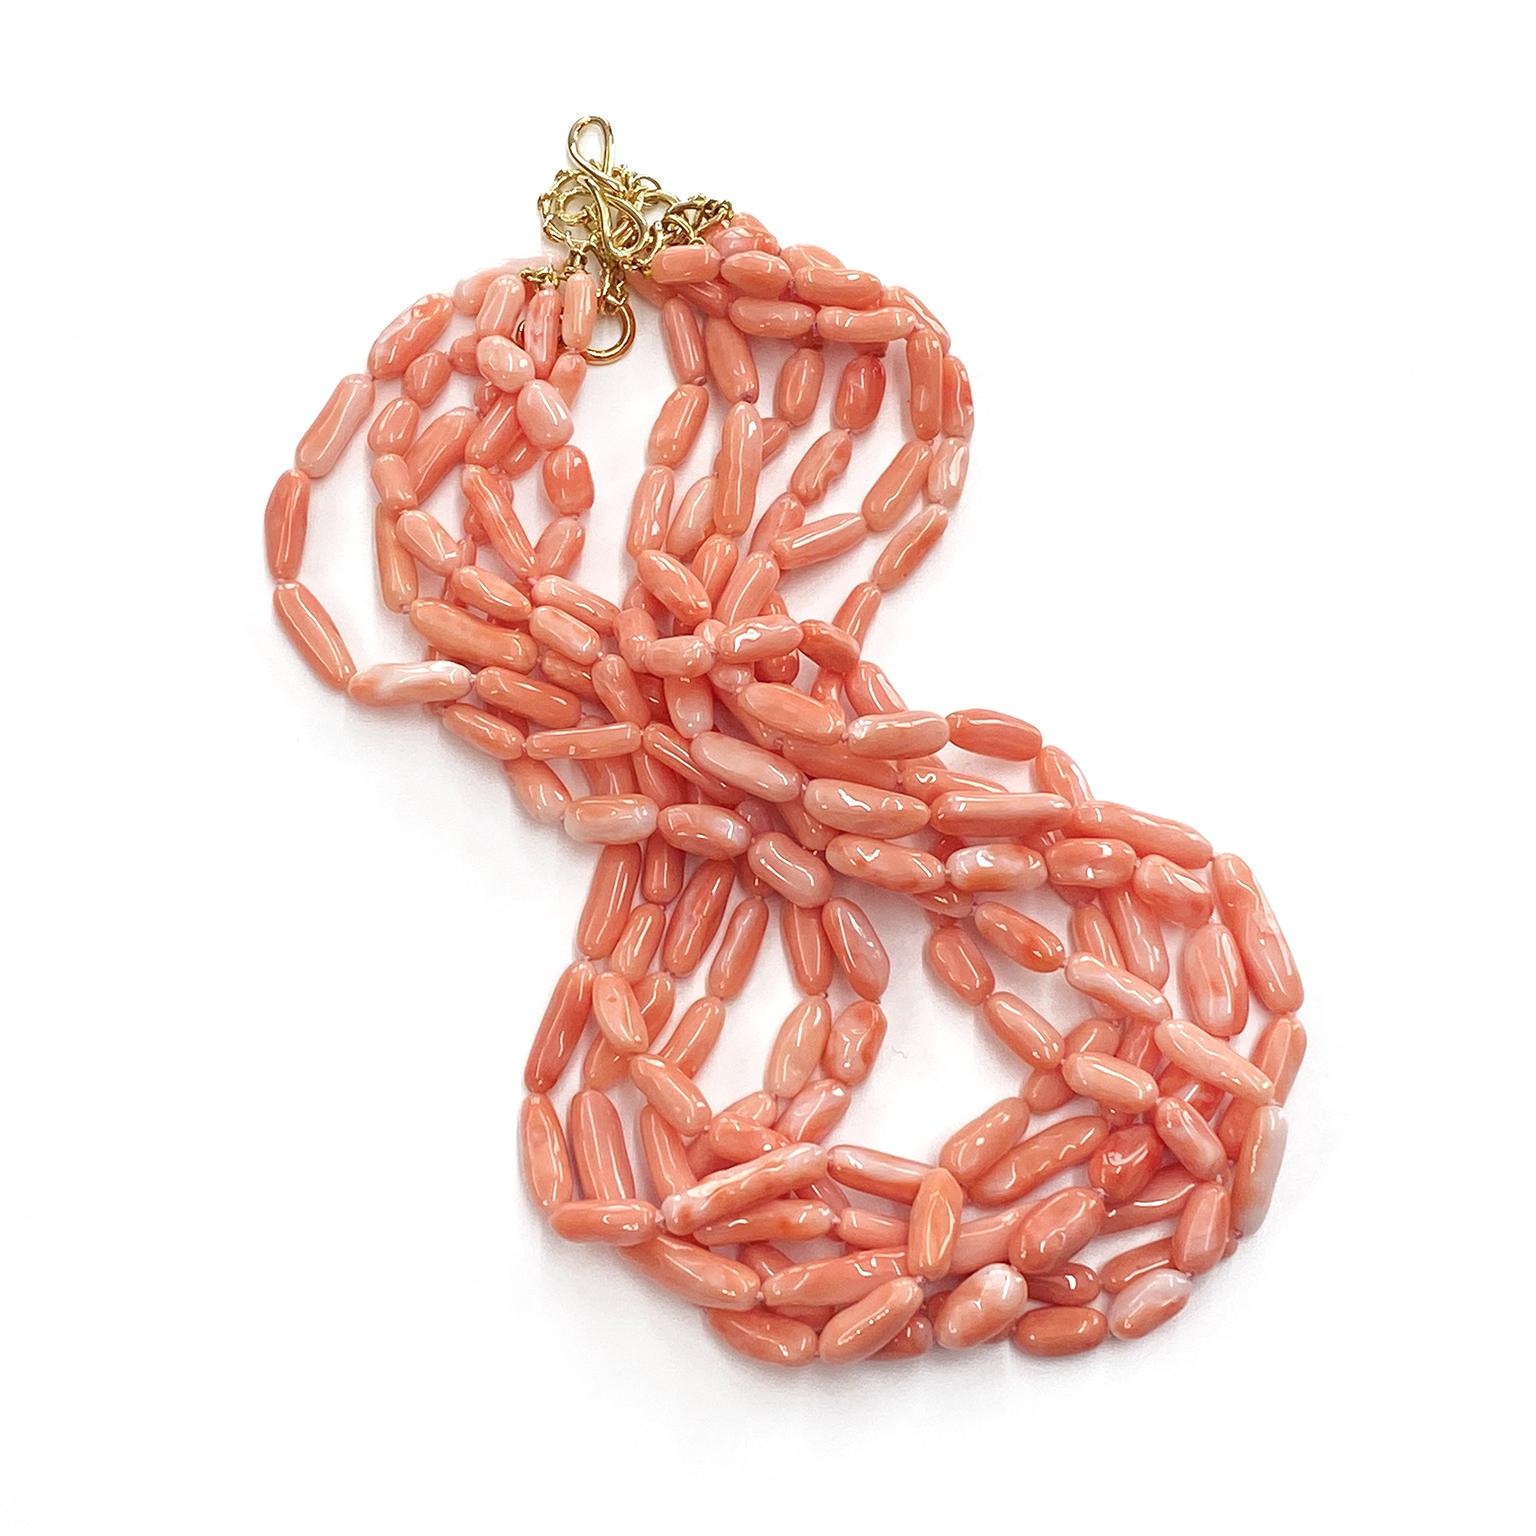 Die zarte Schönheit der Engelshaut wird in dieser mehrreihigen Halskette gewürdigt. Die Koralle ist in unregelmäßig geformte Nuggets gehauen und auf insgesamt sechs Stränge verteilt. Dies ermöglicht es, die Untertöne einer Reihe von rosa